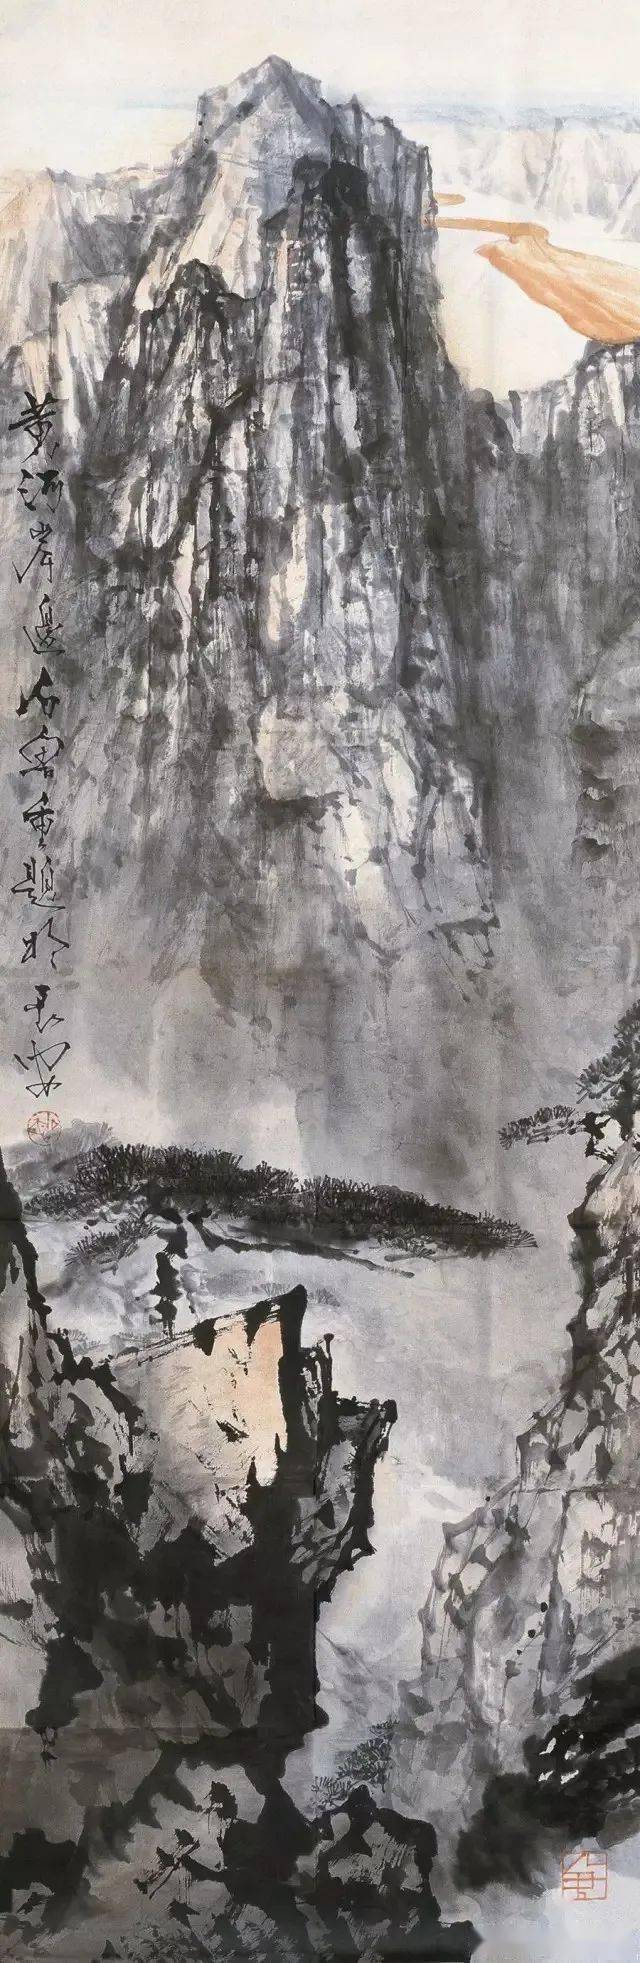 长安画派的领军人物和创立者之一，中国画坛上的一代大师——石鲁